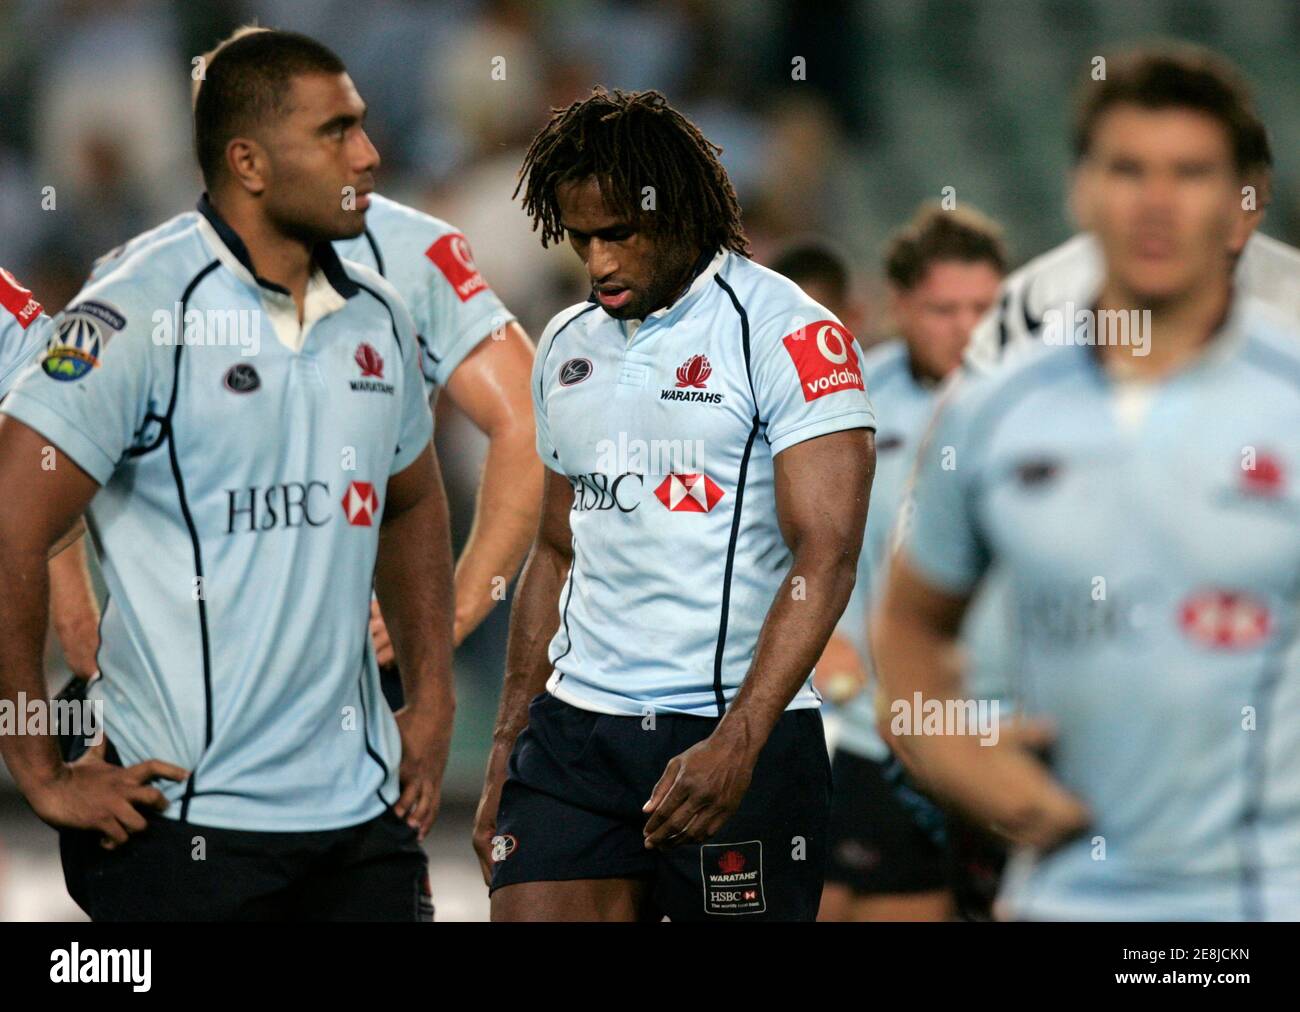 Lote Tuqiri de NSW Waratahs d'Australie (C) réagit après la perte de 32-19 de son équipe aux Bulls d'Afrique du Sud lors de leur match de rugby Super 14 à Sydney le 10 mars 2007. REUTERS/will Burgess (AUSTRALIE) Banque D'Images